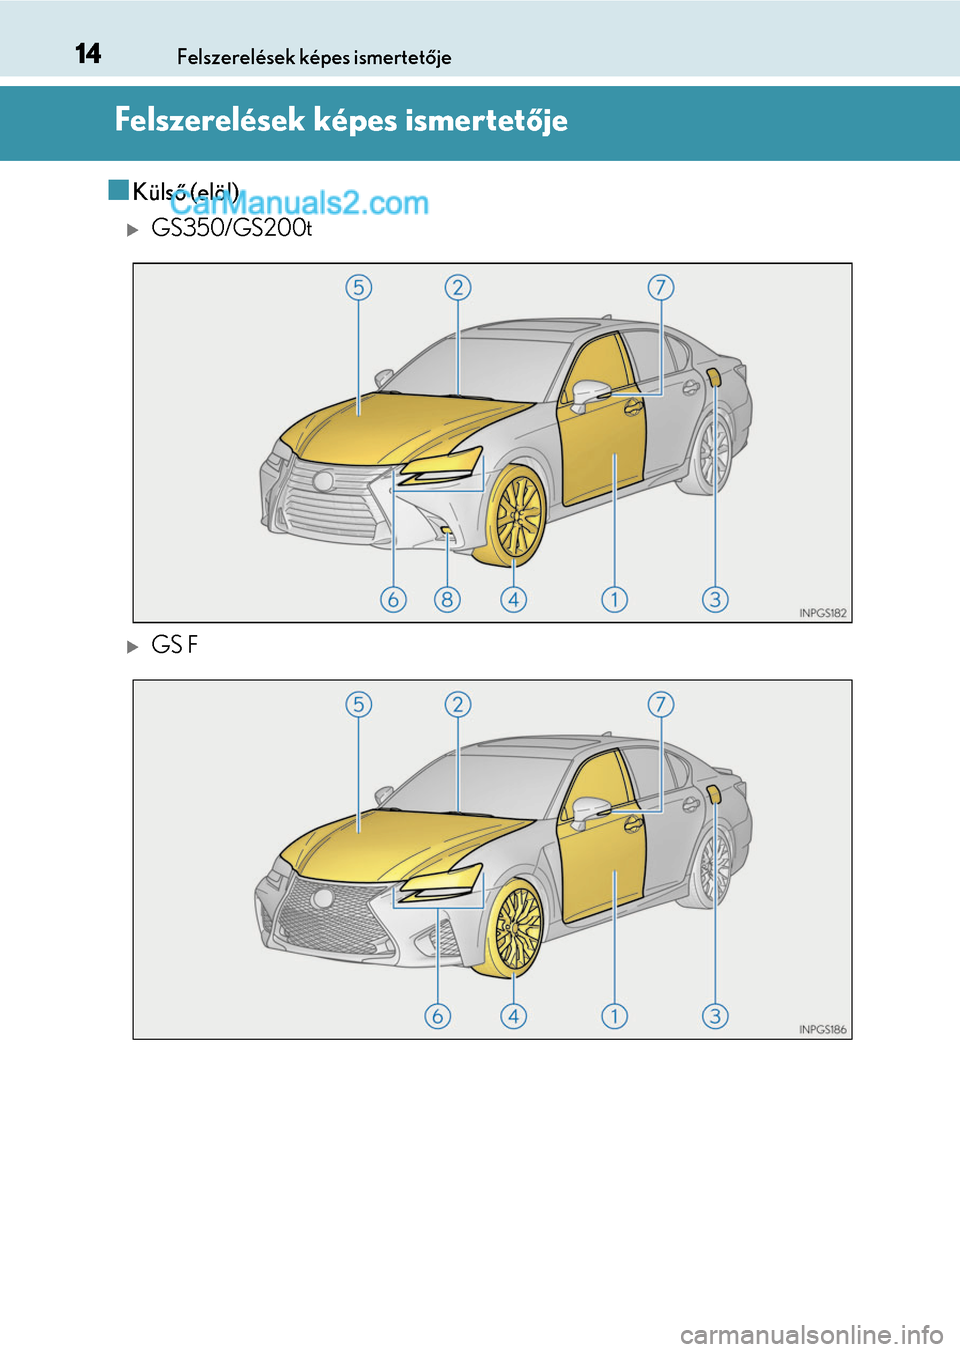 Lexus GS F 2015  Kezelési útmutató (in Hungarian) 14Felszerelések képes ismertetője
Felszerelések képes ismertetője
Külső (elöl)
GS350/GS200t
GS F  